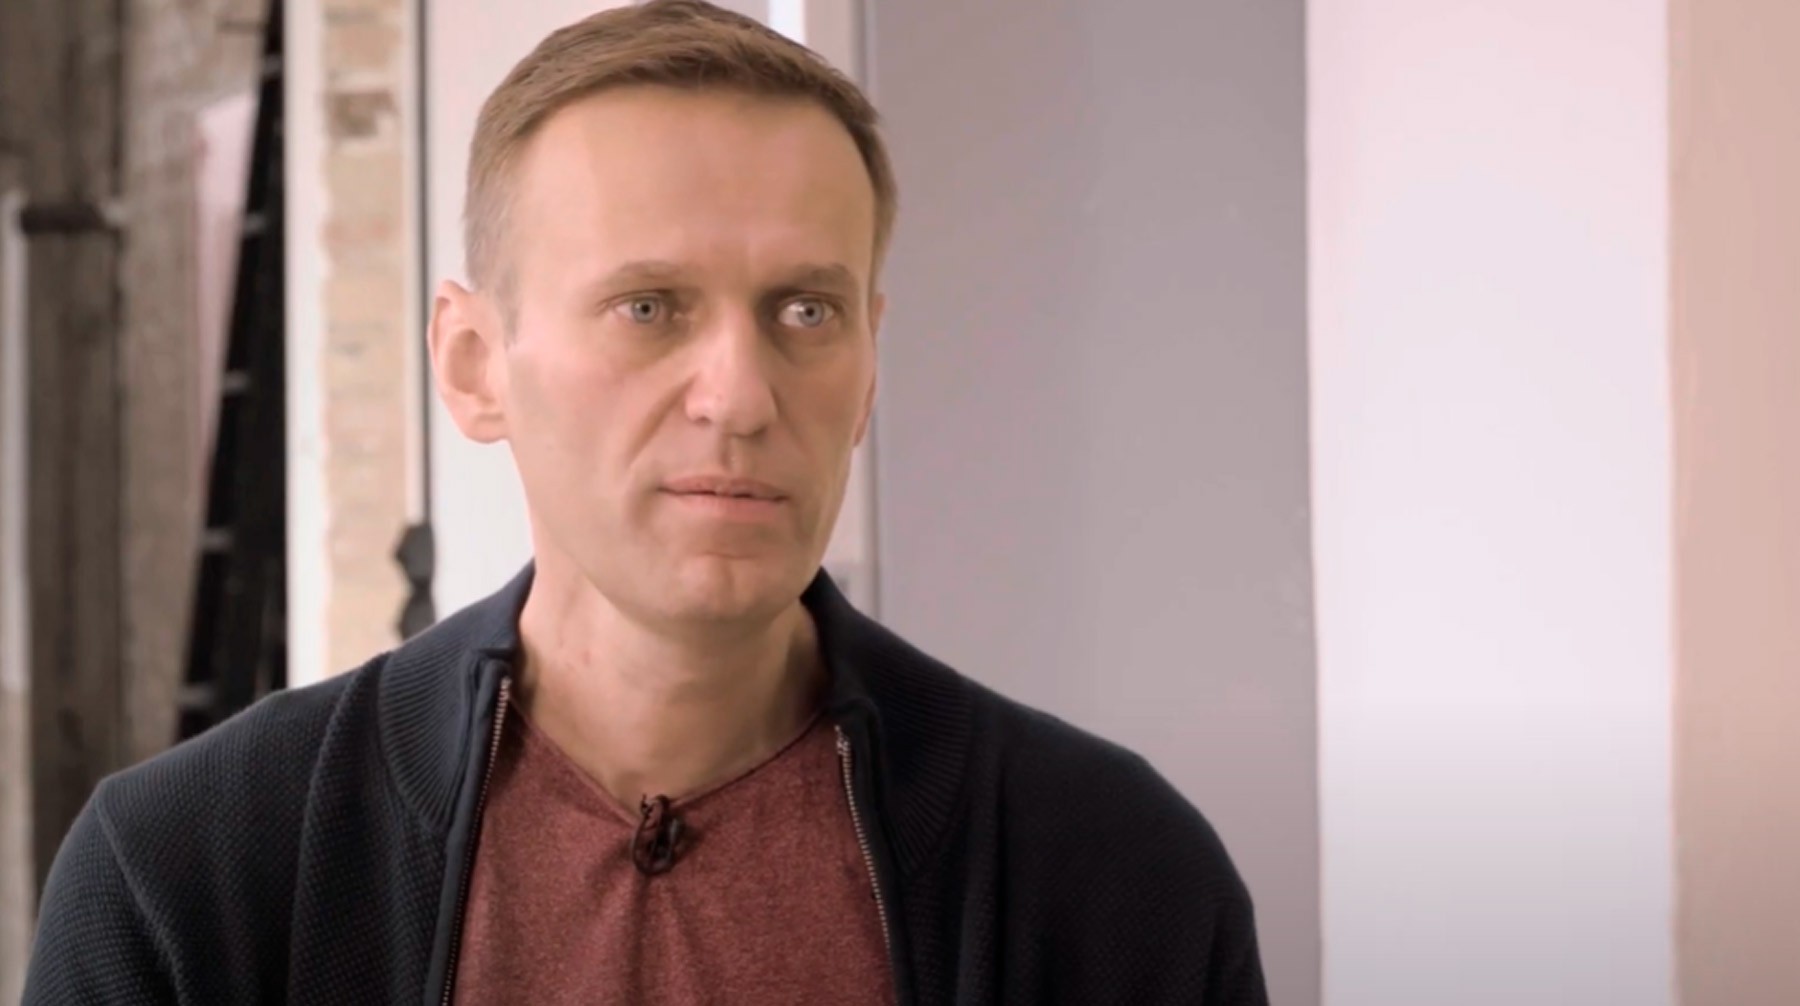 Dailystorm - Навальный смотрел мультики в самолете и игнорировал правила полета перед тем, как ему стало плохо